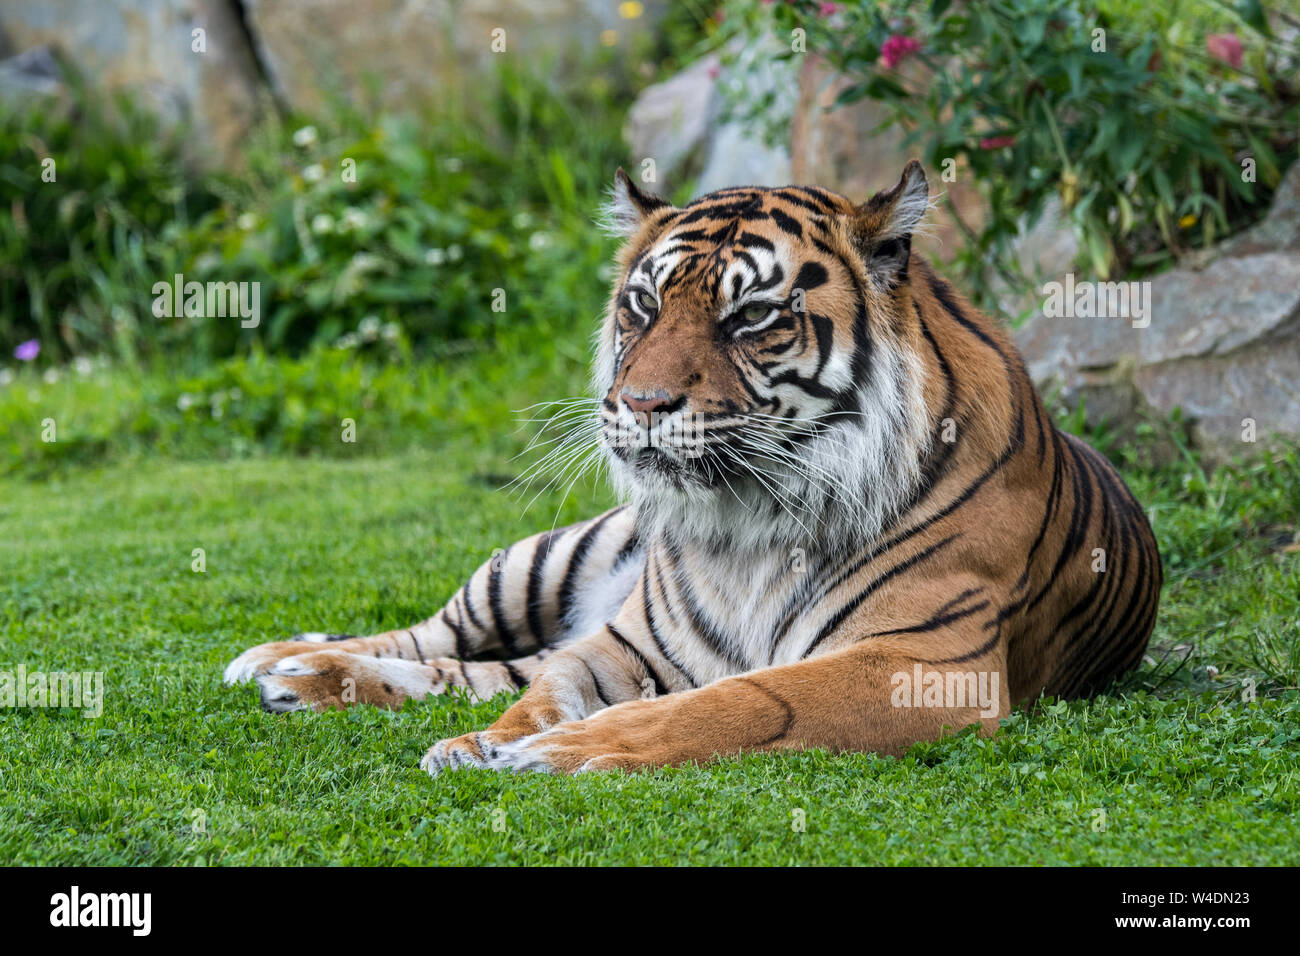 Tigre de Sumatra (Panthera tigris sondaica) nativas de la isla indonesia de Sumatra, Indonesia Foto de stock